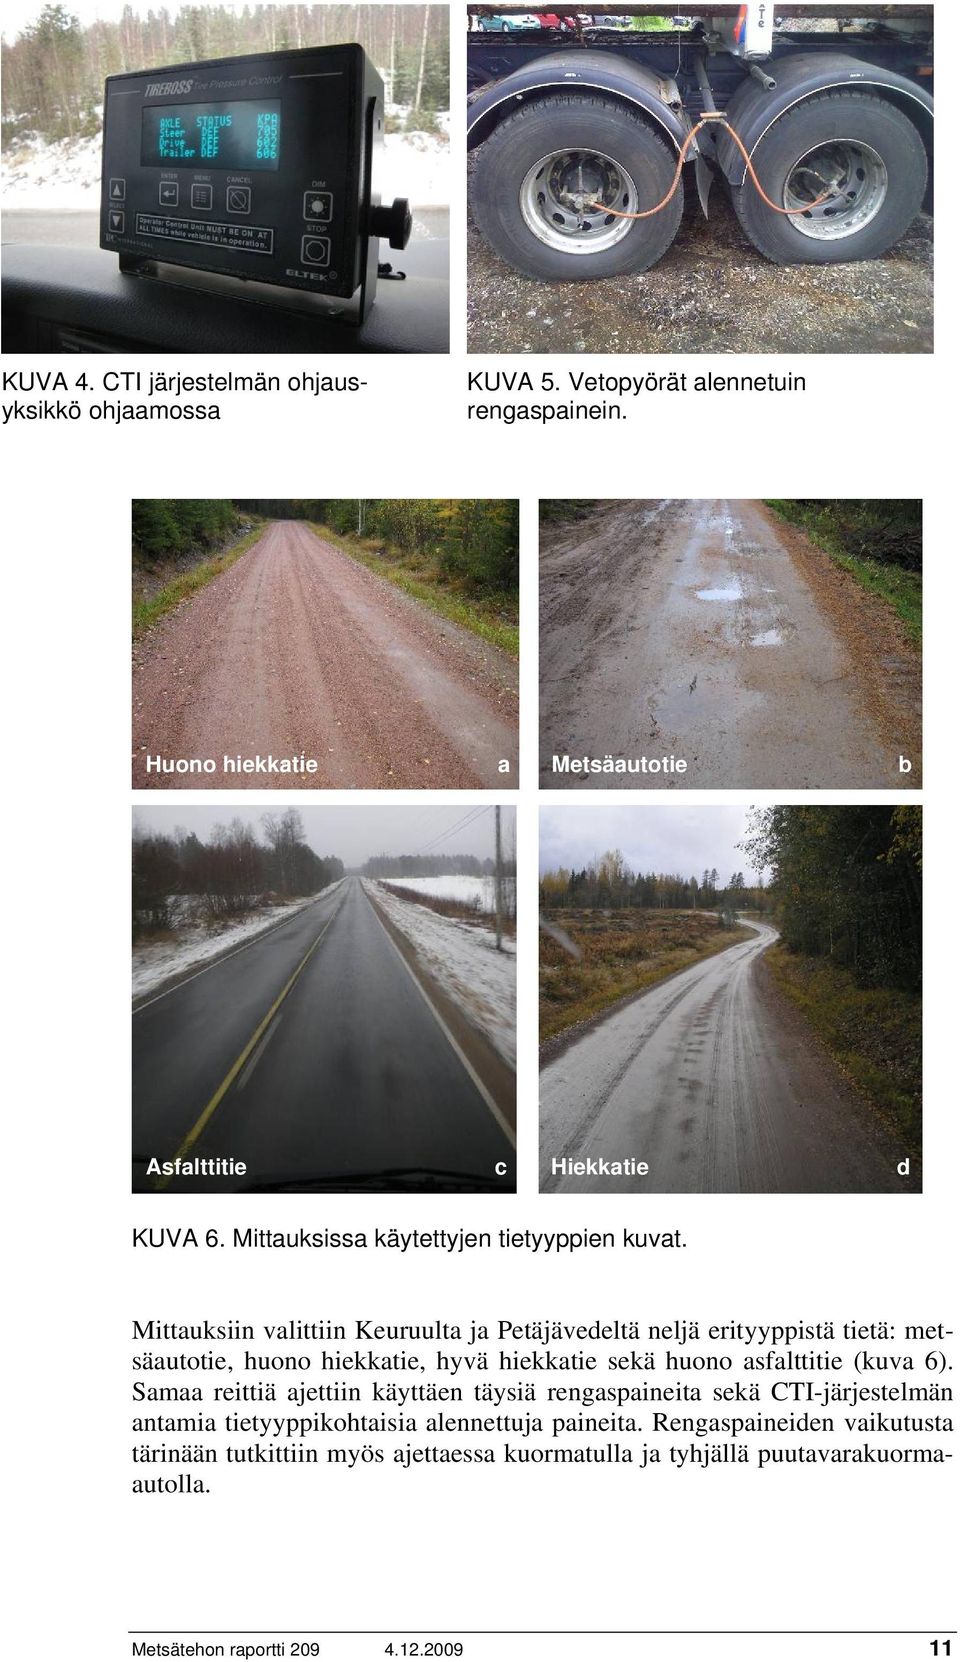 Mittauksiin valittiin Keuruulta ja Petäjävedeltä neljä erityyppistä tietä: metsäautotie, huono hiekkatie, hyvä hiekkatie sekä huono asfalttitie (kuva 6).